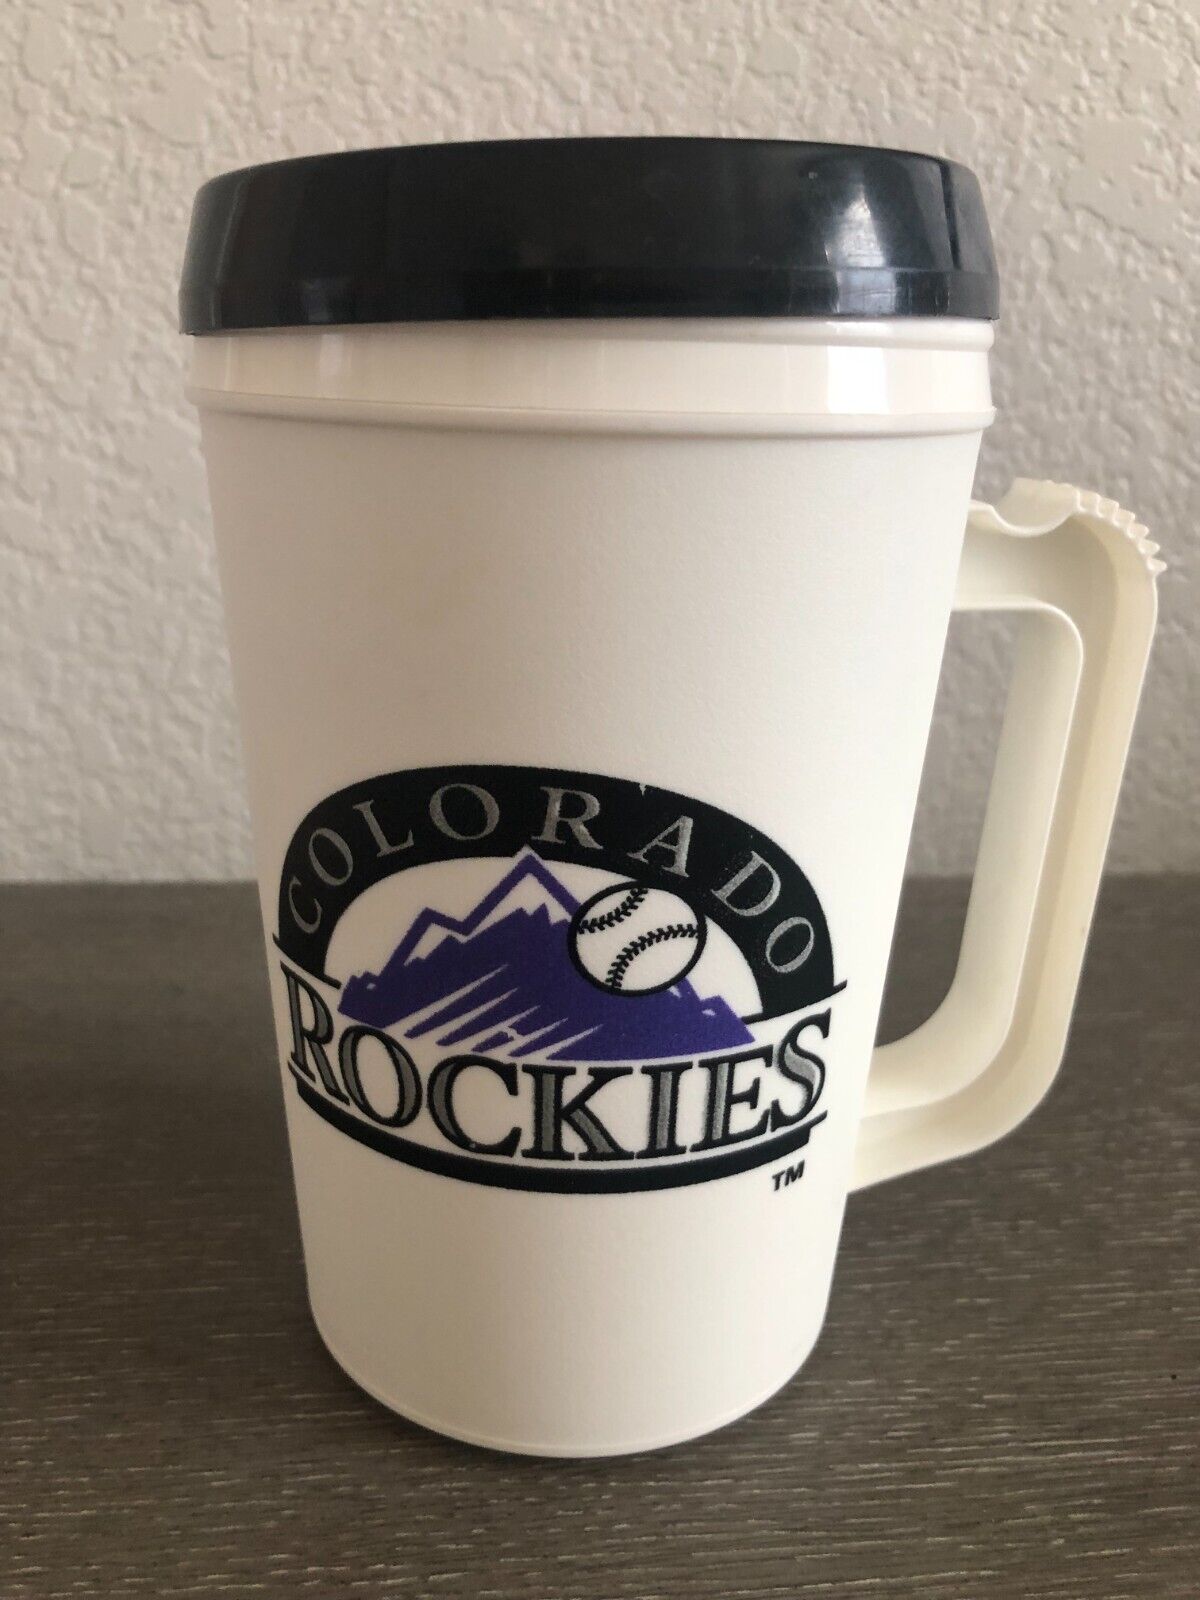 1994 Vintage 22oz Plastic Cup Mug w/ Lid Colorado Rockies MLB Baseball